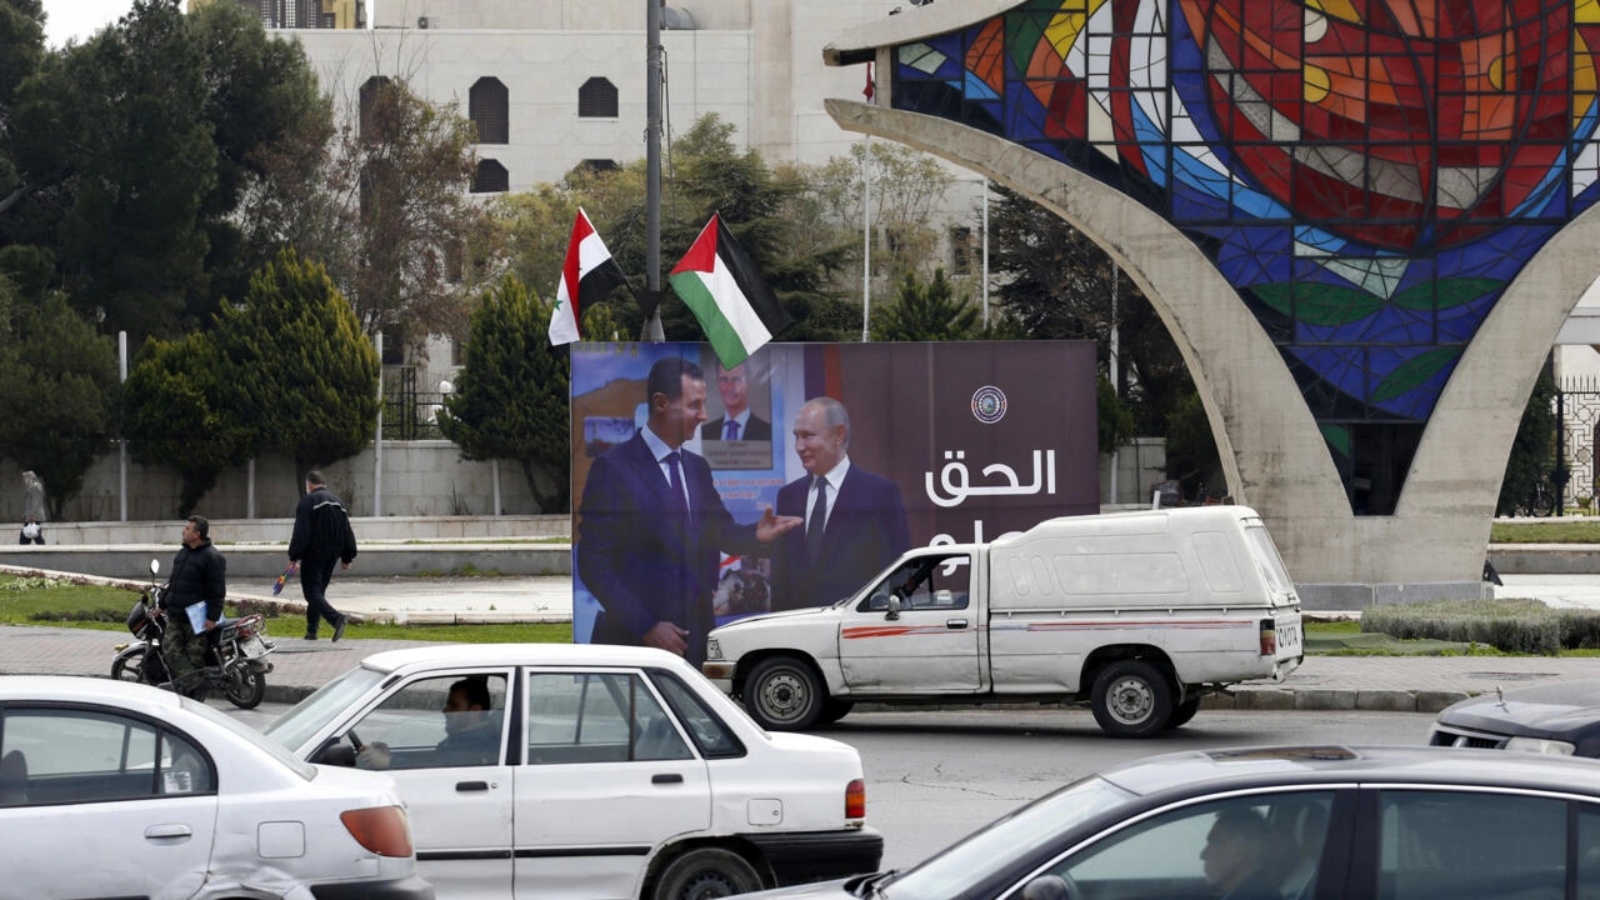 صورة عملاقة مرفوعة في ساحة الأمويين في دمشق في 8 مارس 2022، يظهر فيها الرئيس السوري بشار الأسد متحدثاً مع نظيره الروسي فلاديمير بوتين